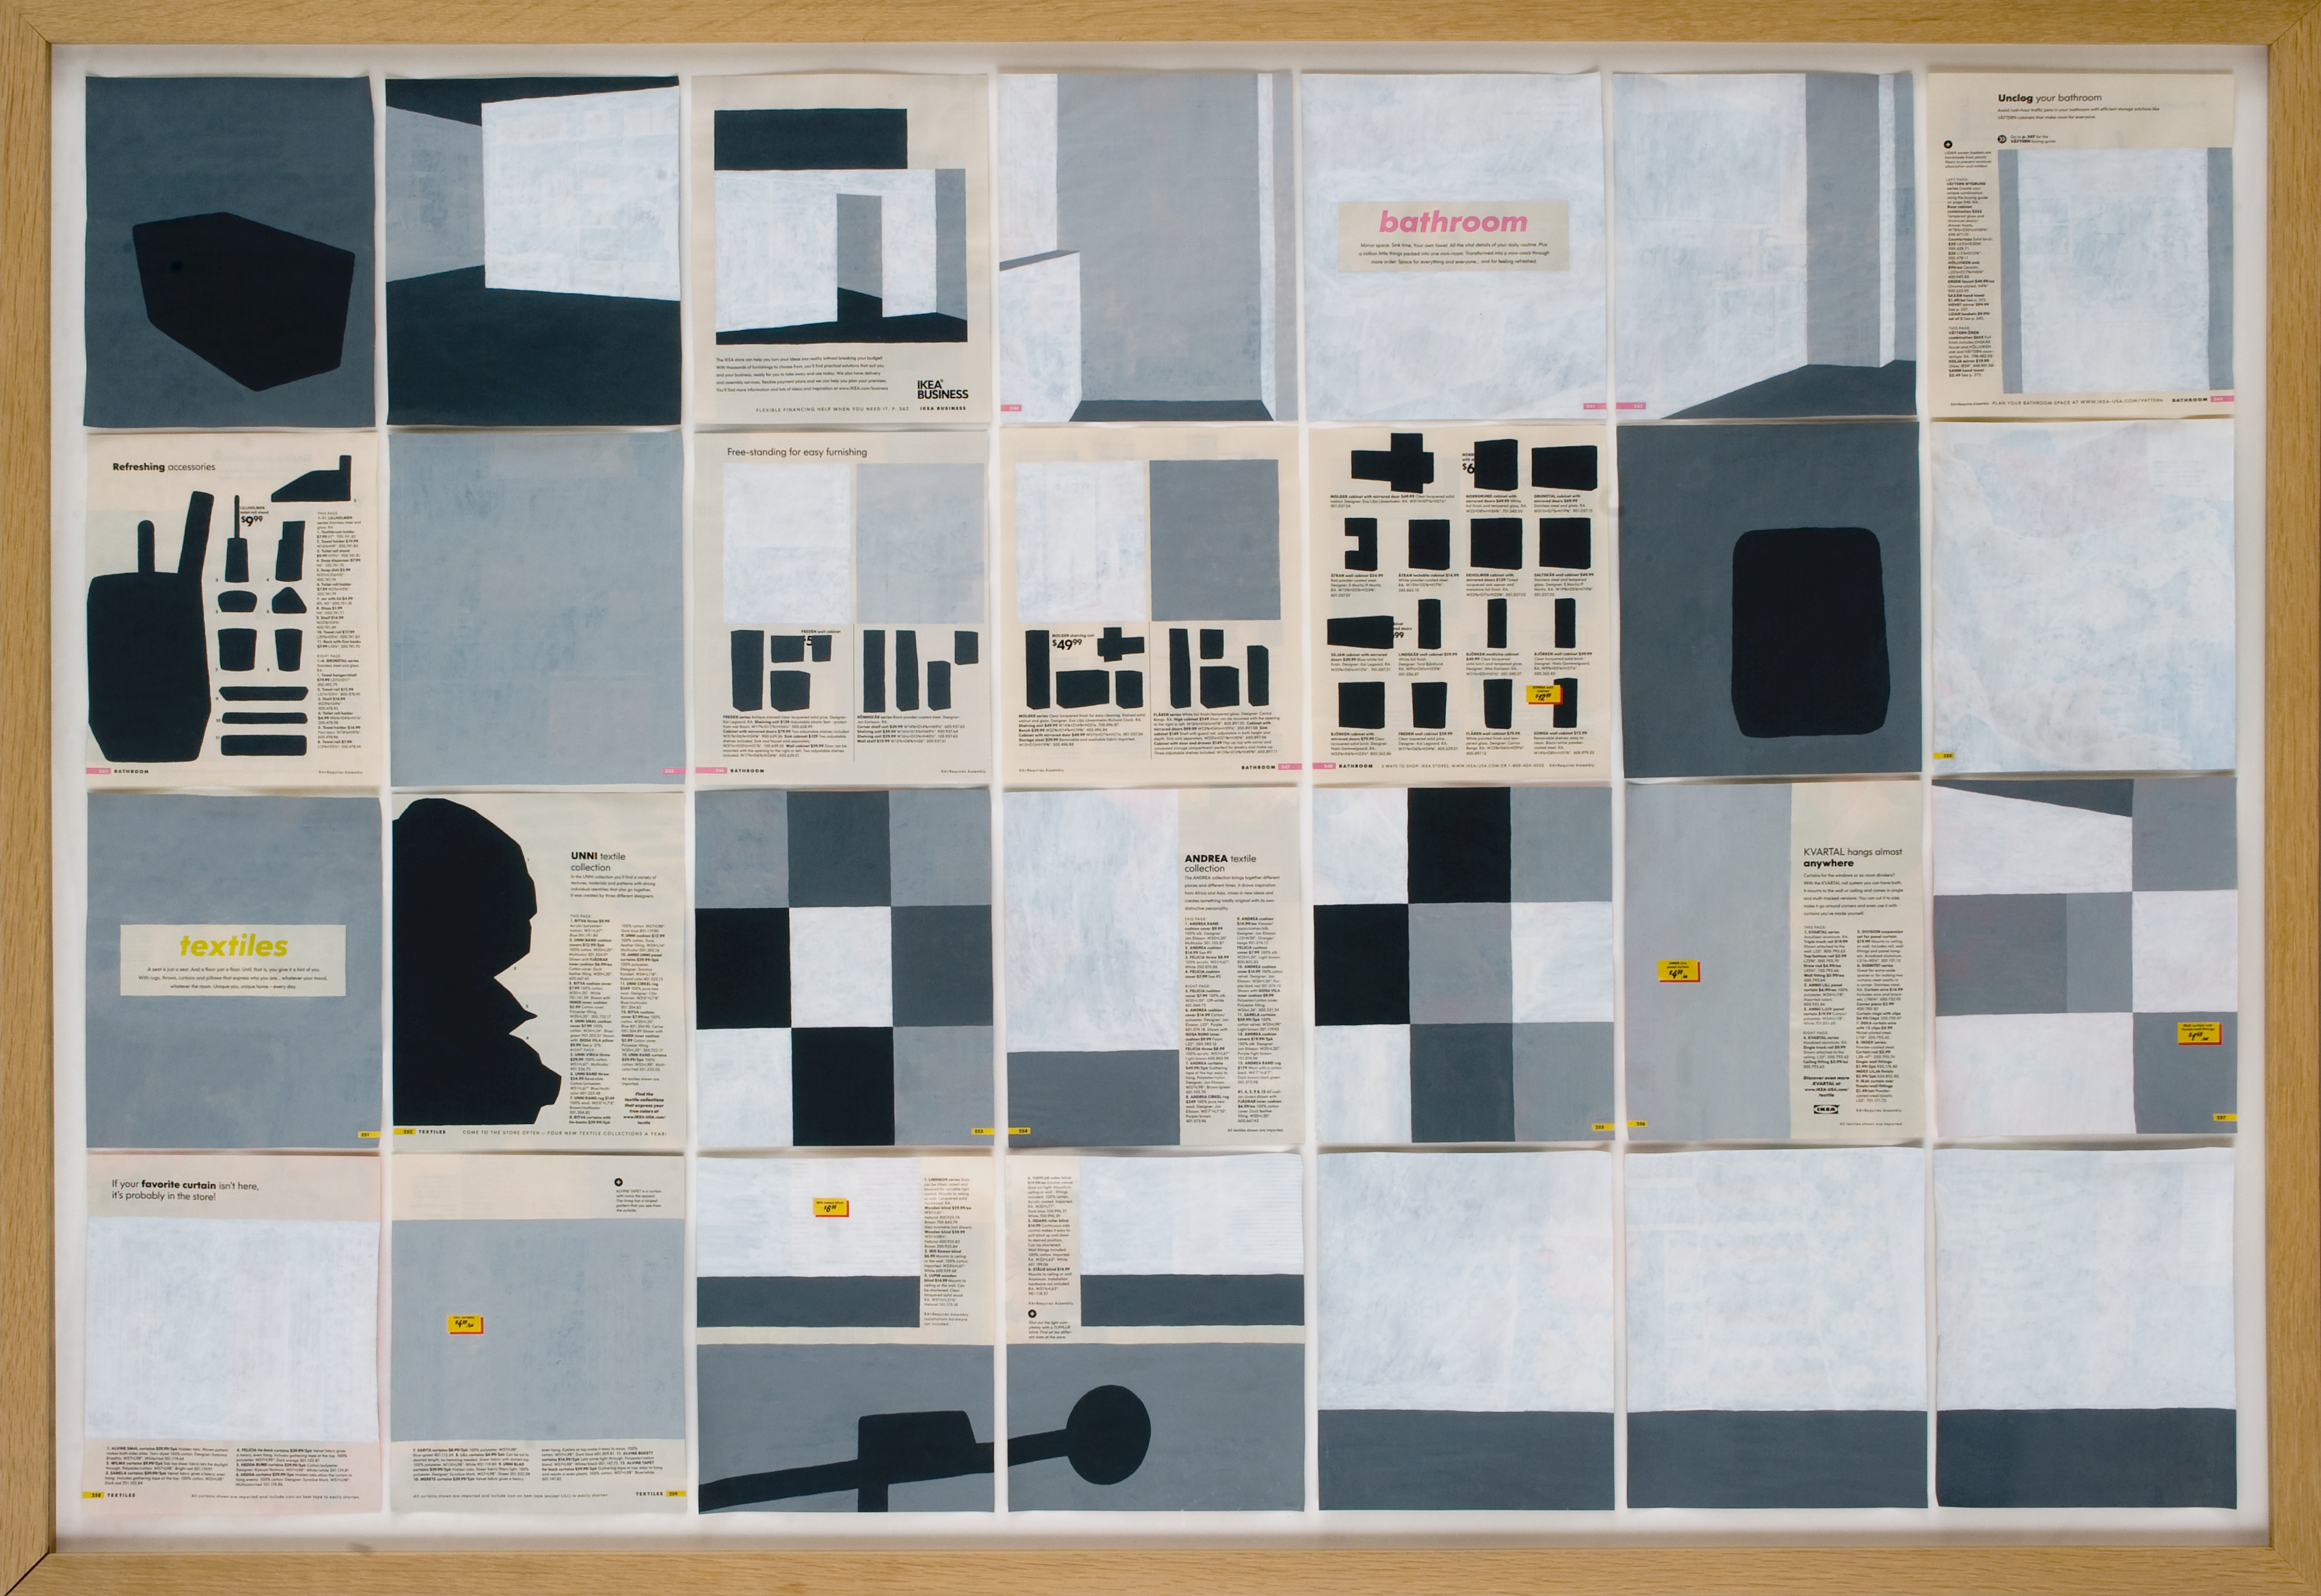 Jochen Gerner, n°7 – Bathroom – Textiles, 2008_Série Home_Acrylique sur papier imprimé, 100 x 144 cm avec cadre_courtesy galerie anne barrault